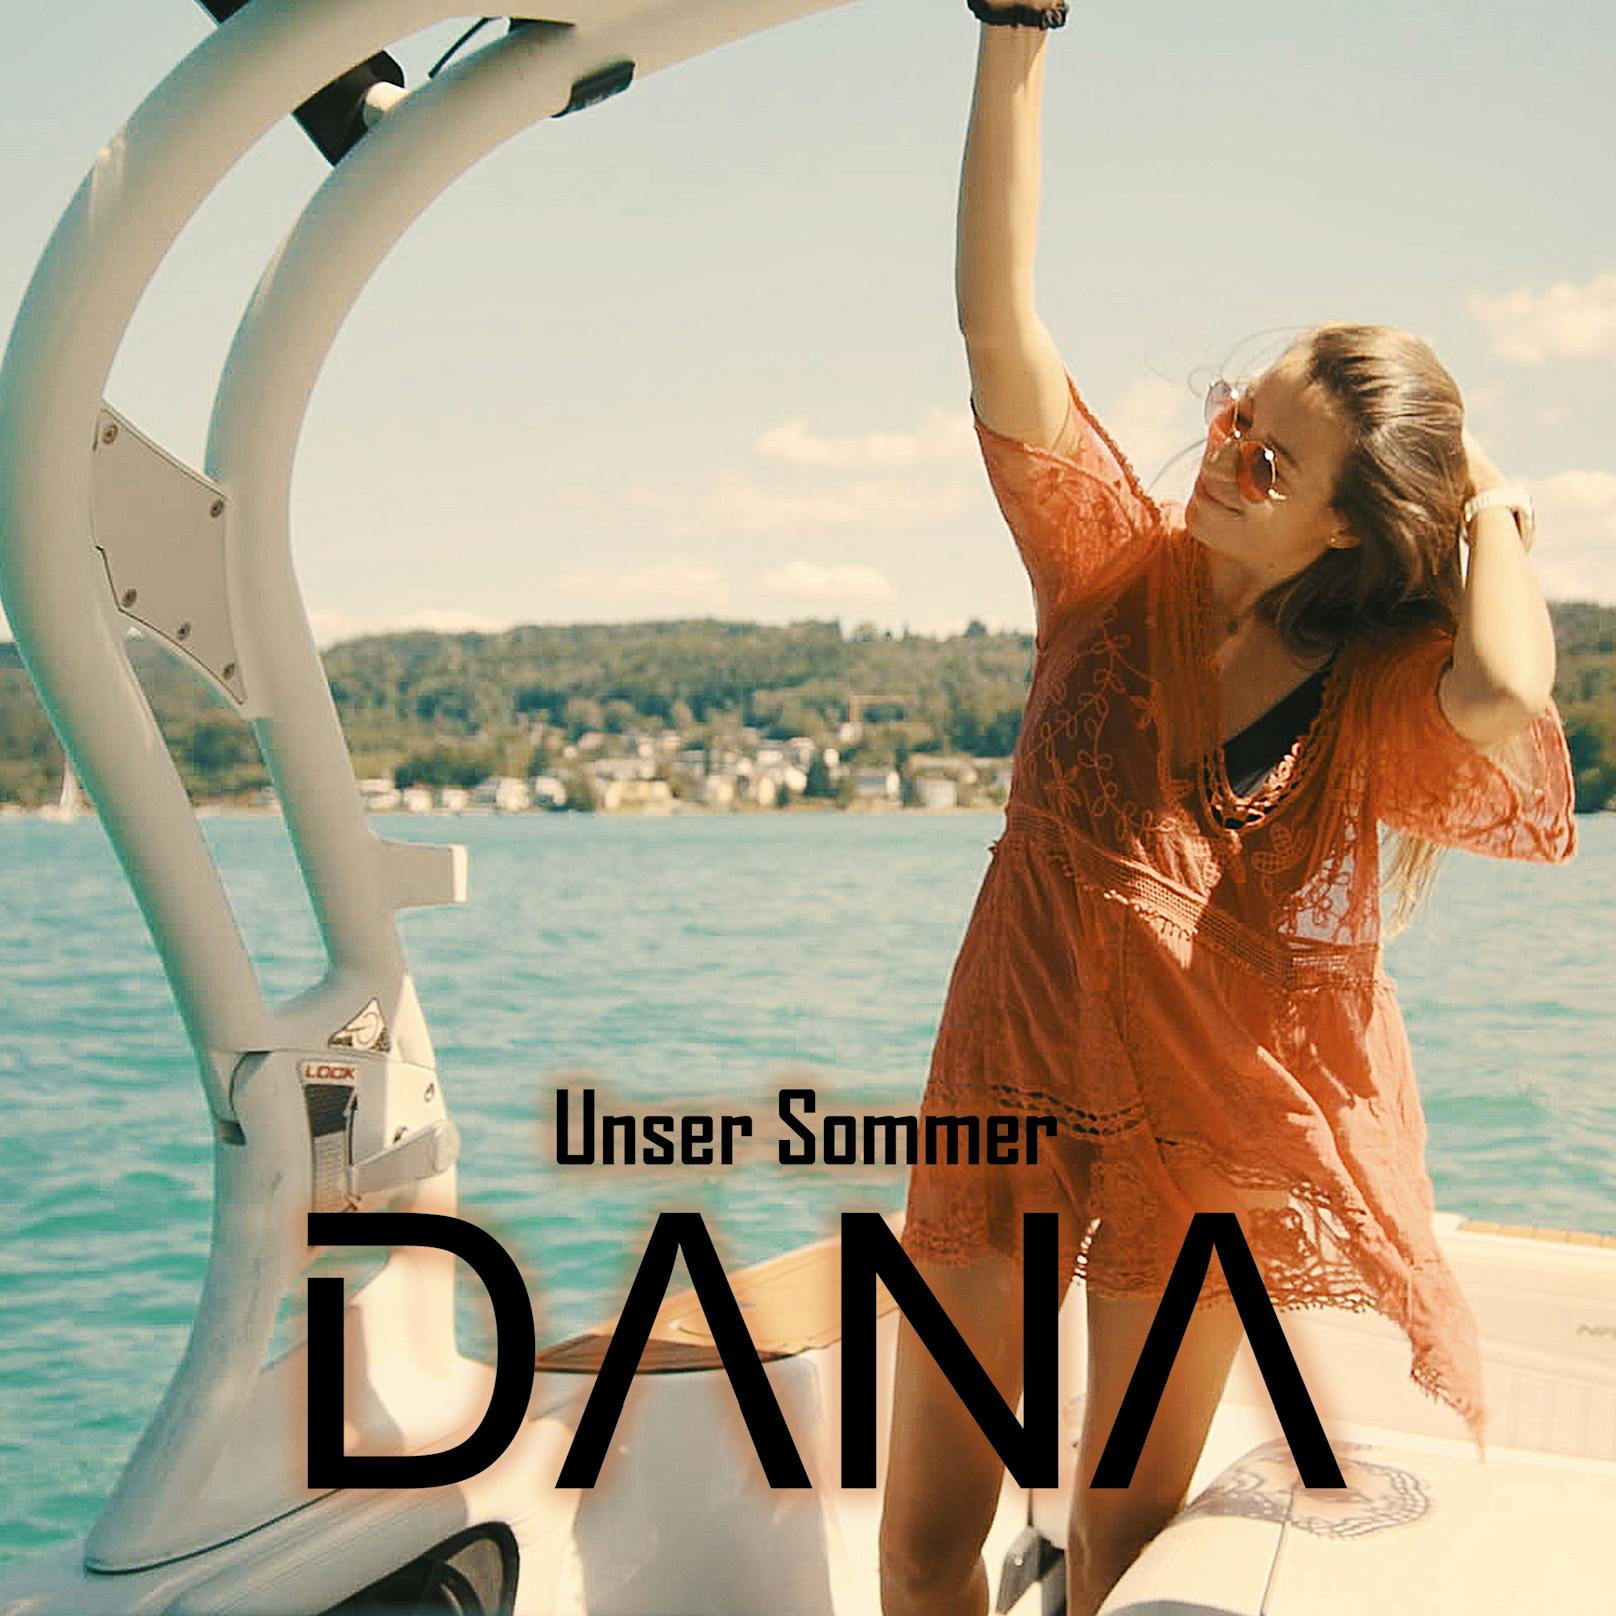 <strong>Dana "Unser Sommer"</strong>:&nbsp;Mit ihrer gewohnt zerbrechlich wirkenden Stimme und dem Kärntner Dialekt, schafft es die talentierte 24-Jährige, einen chilligen Sommertitel im ganz eigenen Stil zu kreieren. <a href="https://www.youtube.com/watch?v=RamGKKxjj04">Auch das Video versprüht Summer-Feeling pur &gt;&gt;</a>